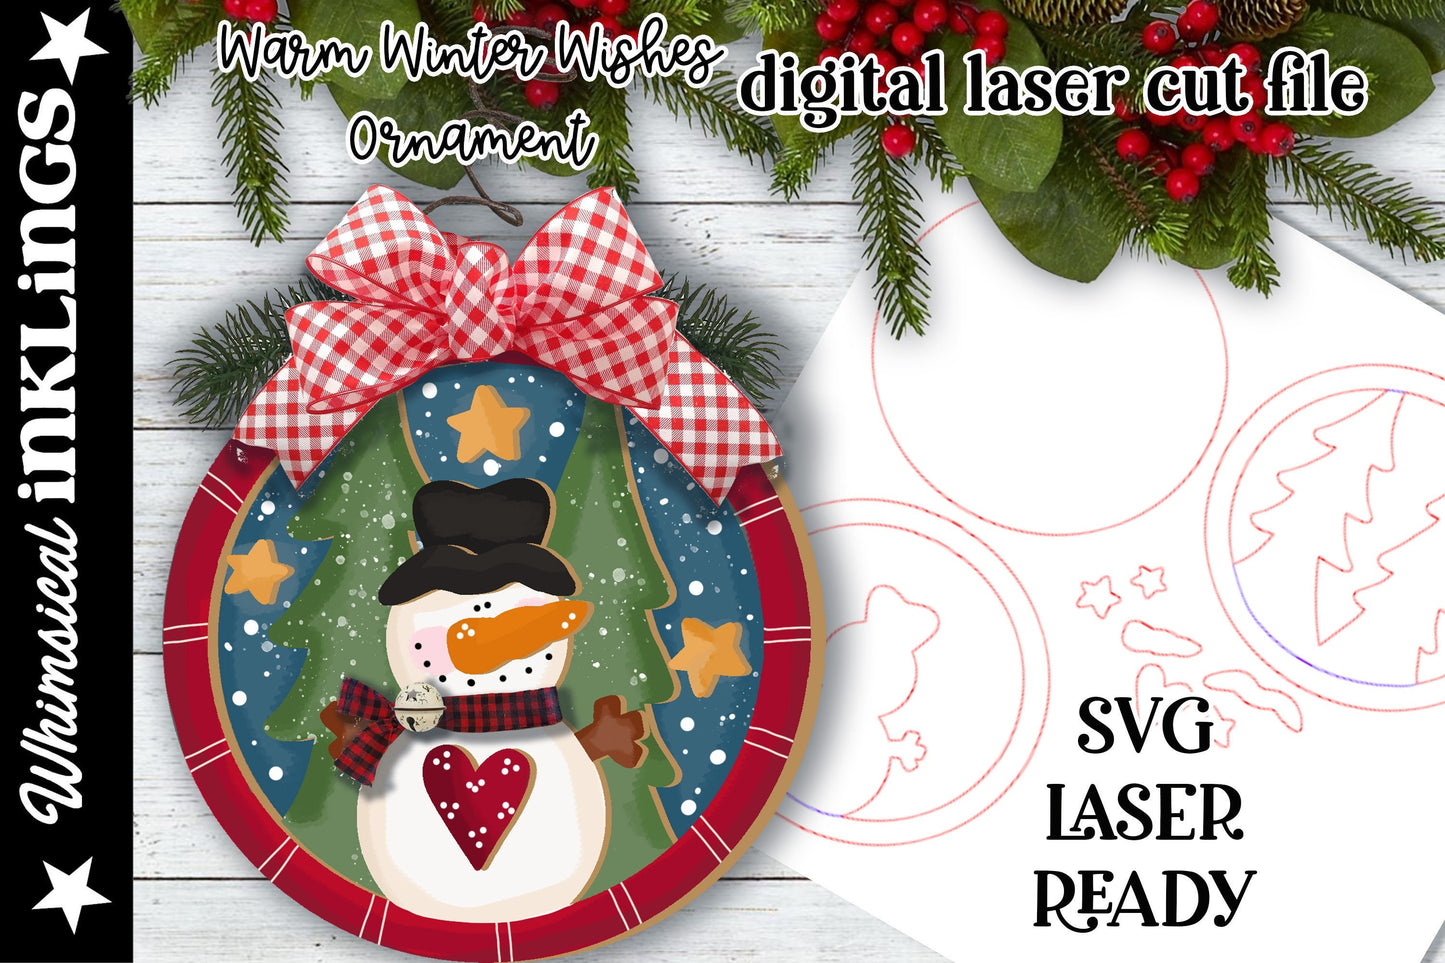 Warm Winter Wishes Snowman Ornament SVG| Laser Cut Snowman Ornament| Glow forge| Ornament SVG